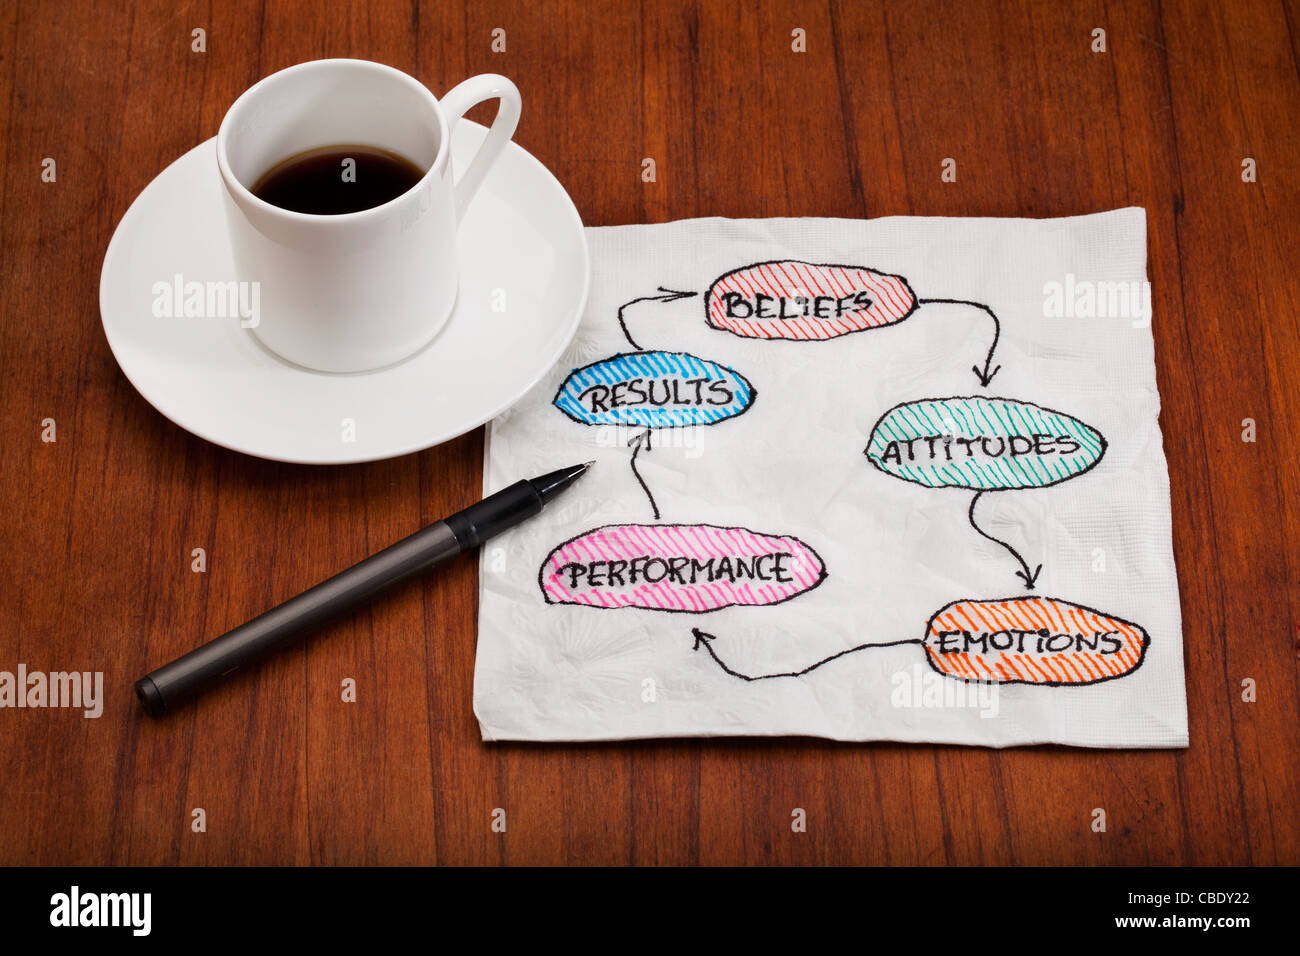 Credenza, atteggiamento, emozione, prestazioni, risultato, ciclo di feedback - concetto presentato come un tovagliolo doodle con tazza di caffè Foto Stock